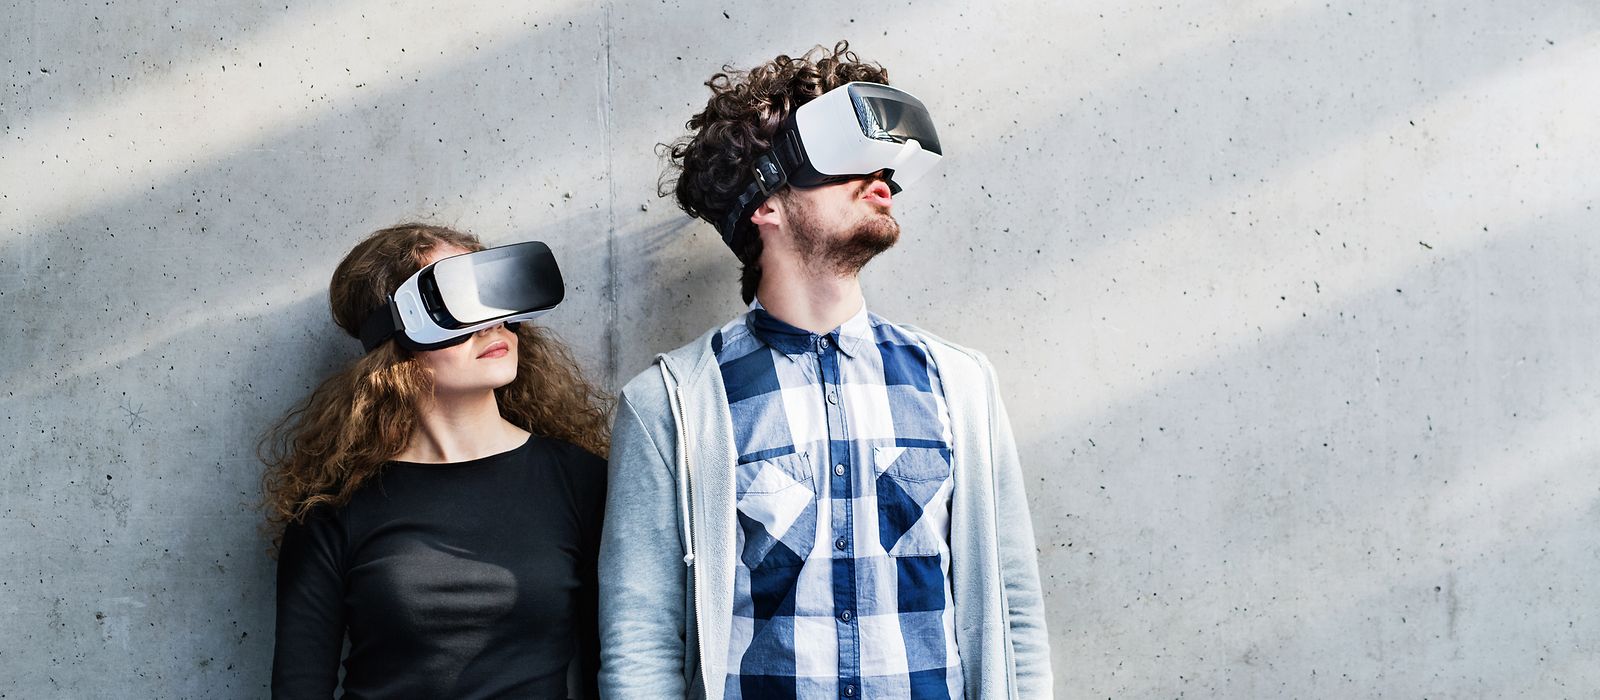 Junge Frau und junger Mann stehen vor einer Wand. Beide haben VR-Brillen auf